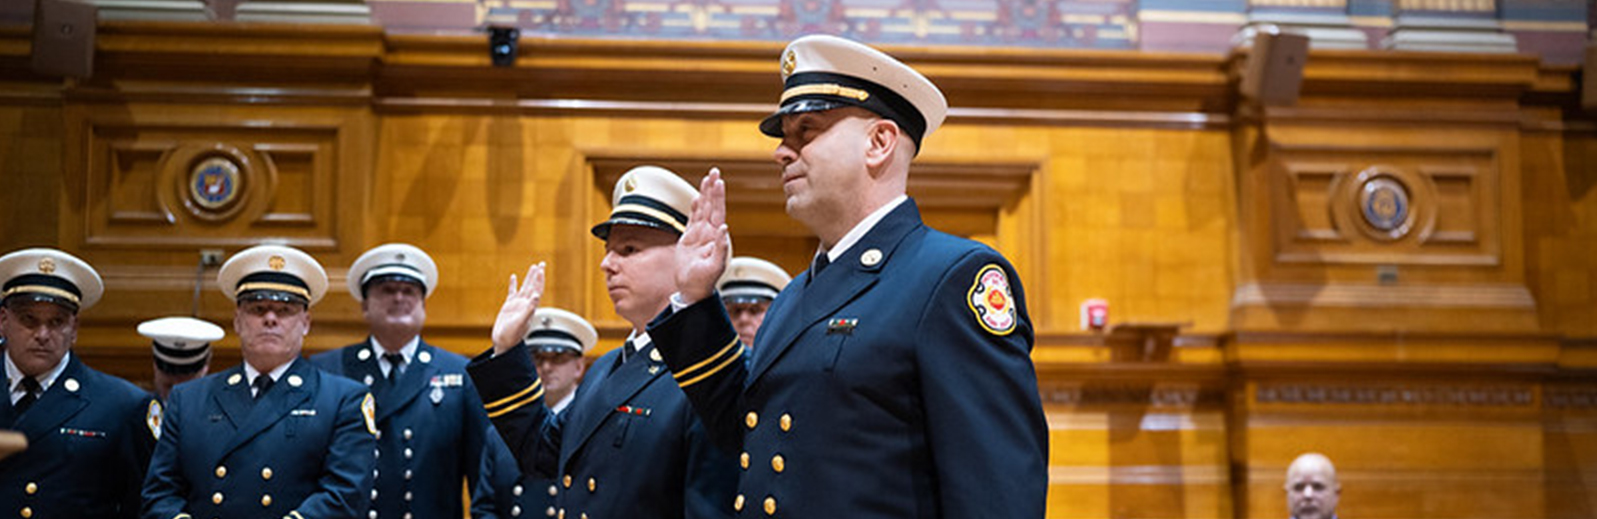 Fire fighters taking an oath